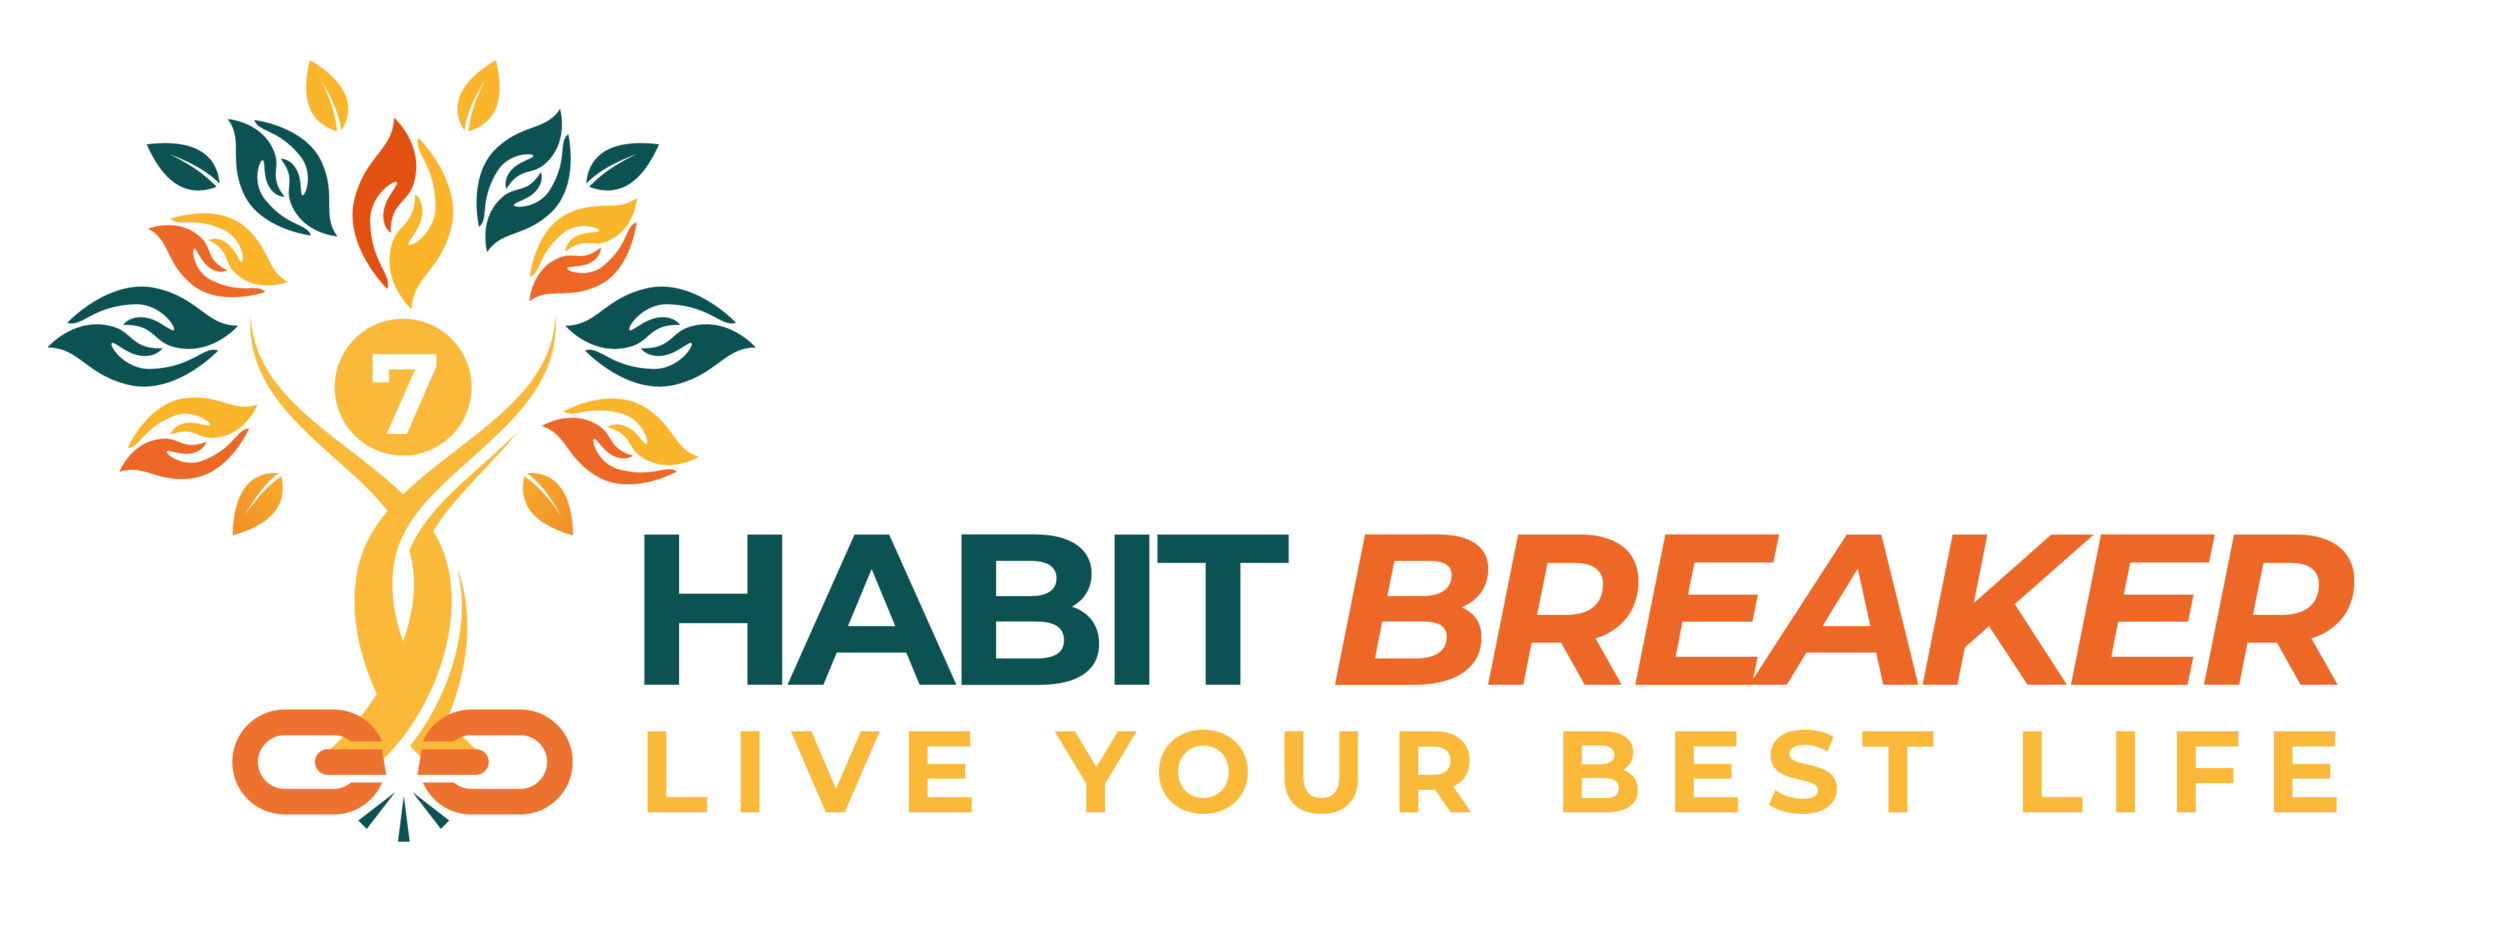 Habit Breaker